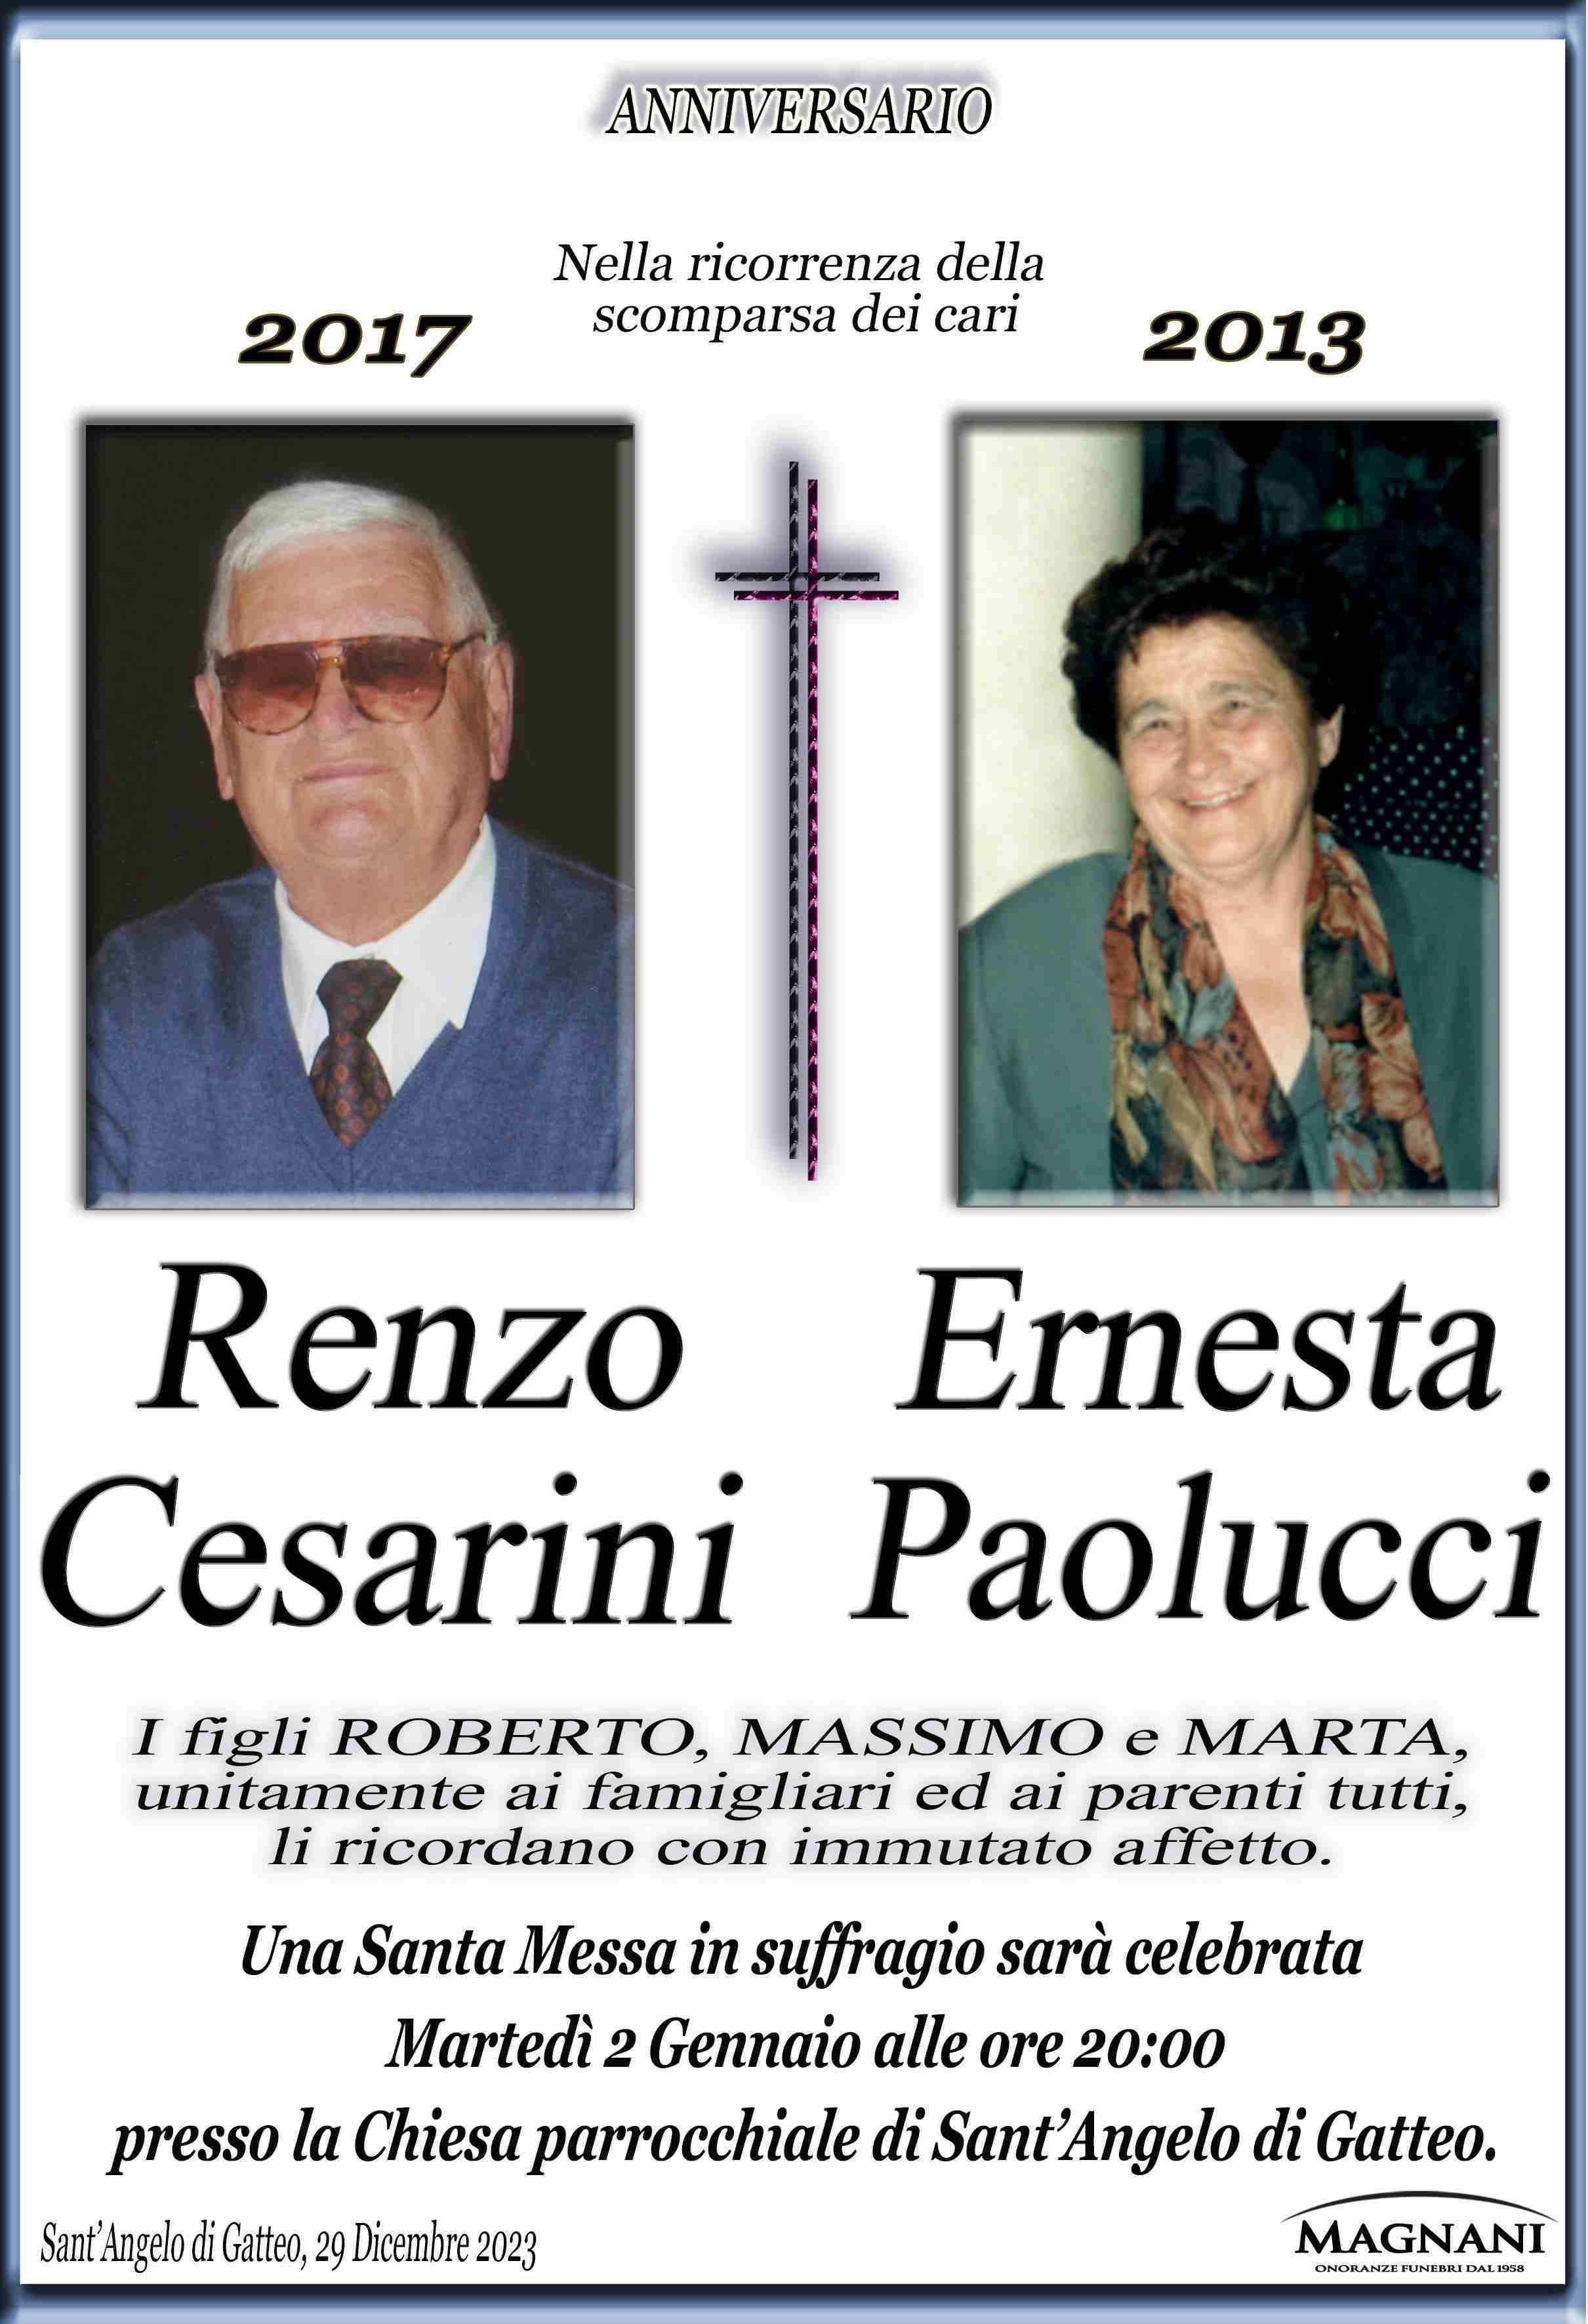 Renzo Cesarini e Ernesta Paolucci